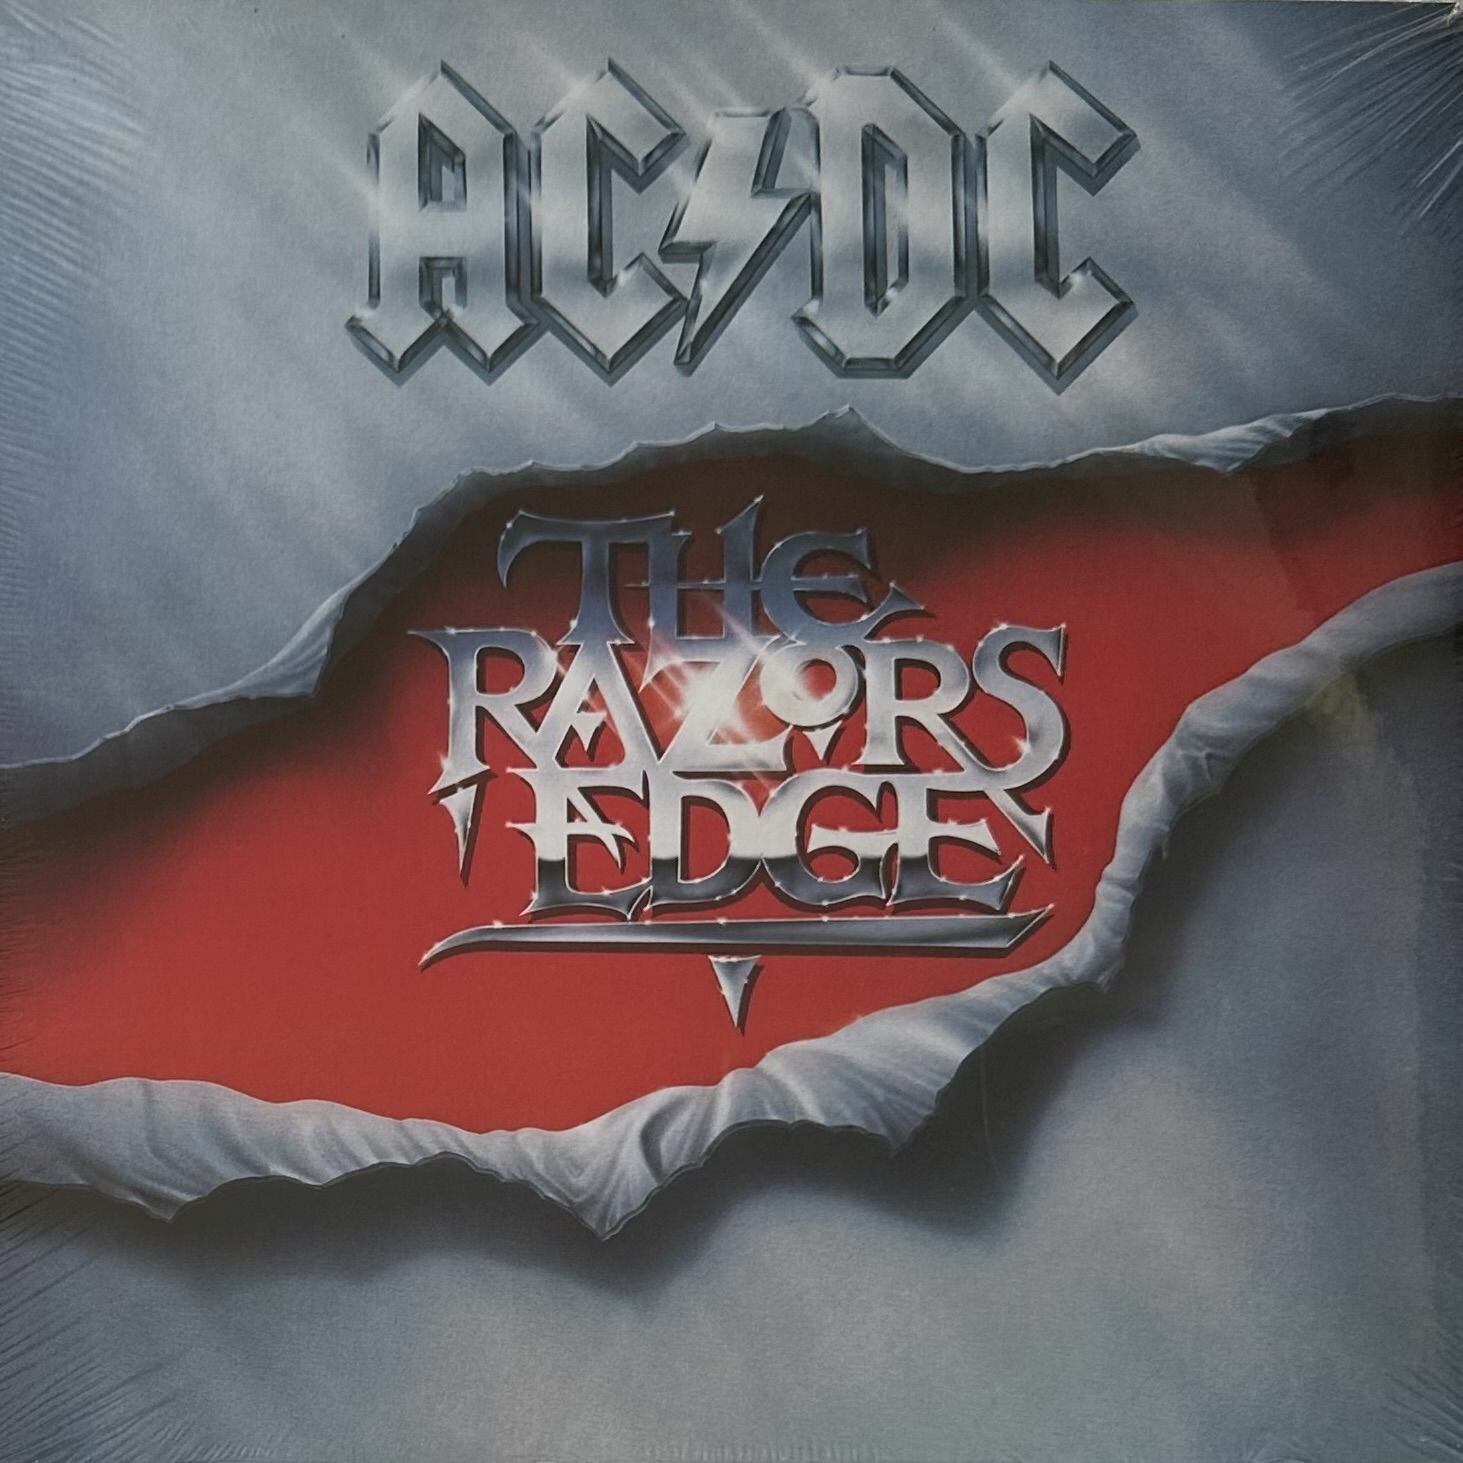 Виниловая пластинка AC/DC The Razors Edge (Европа 2018г.)